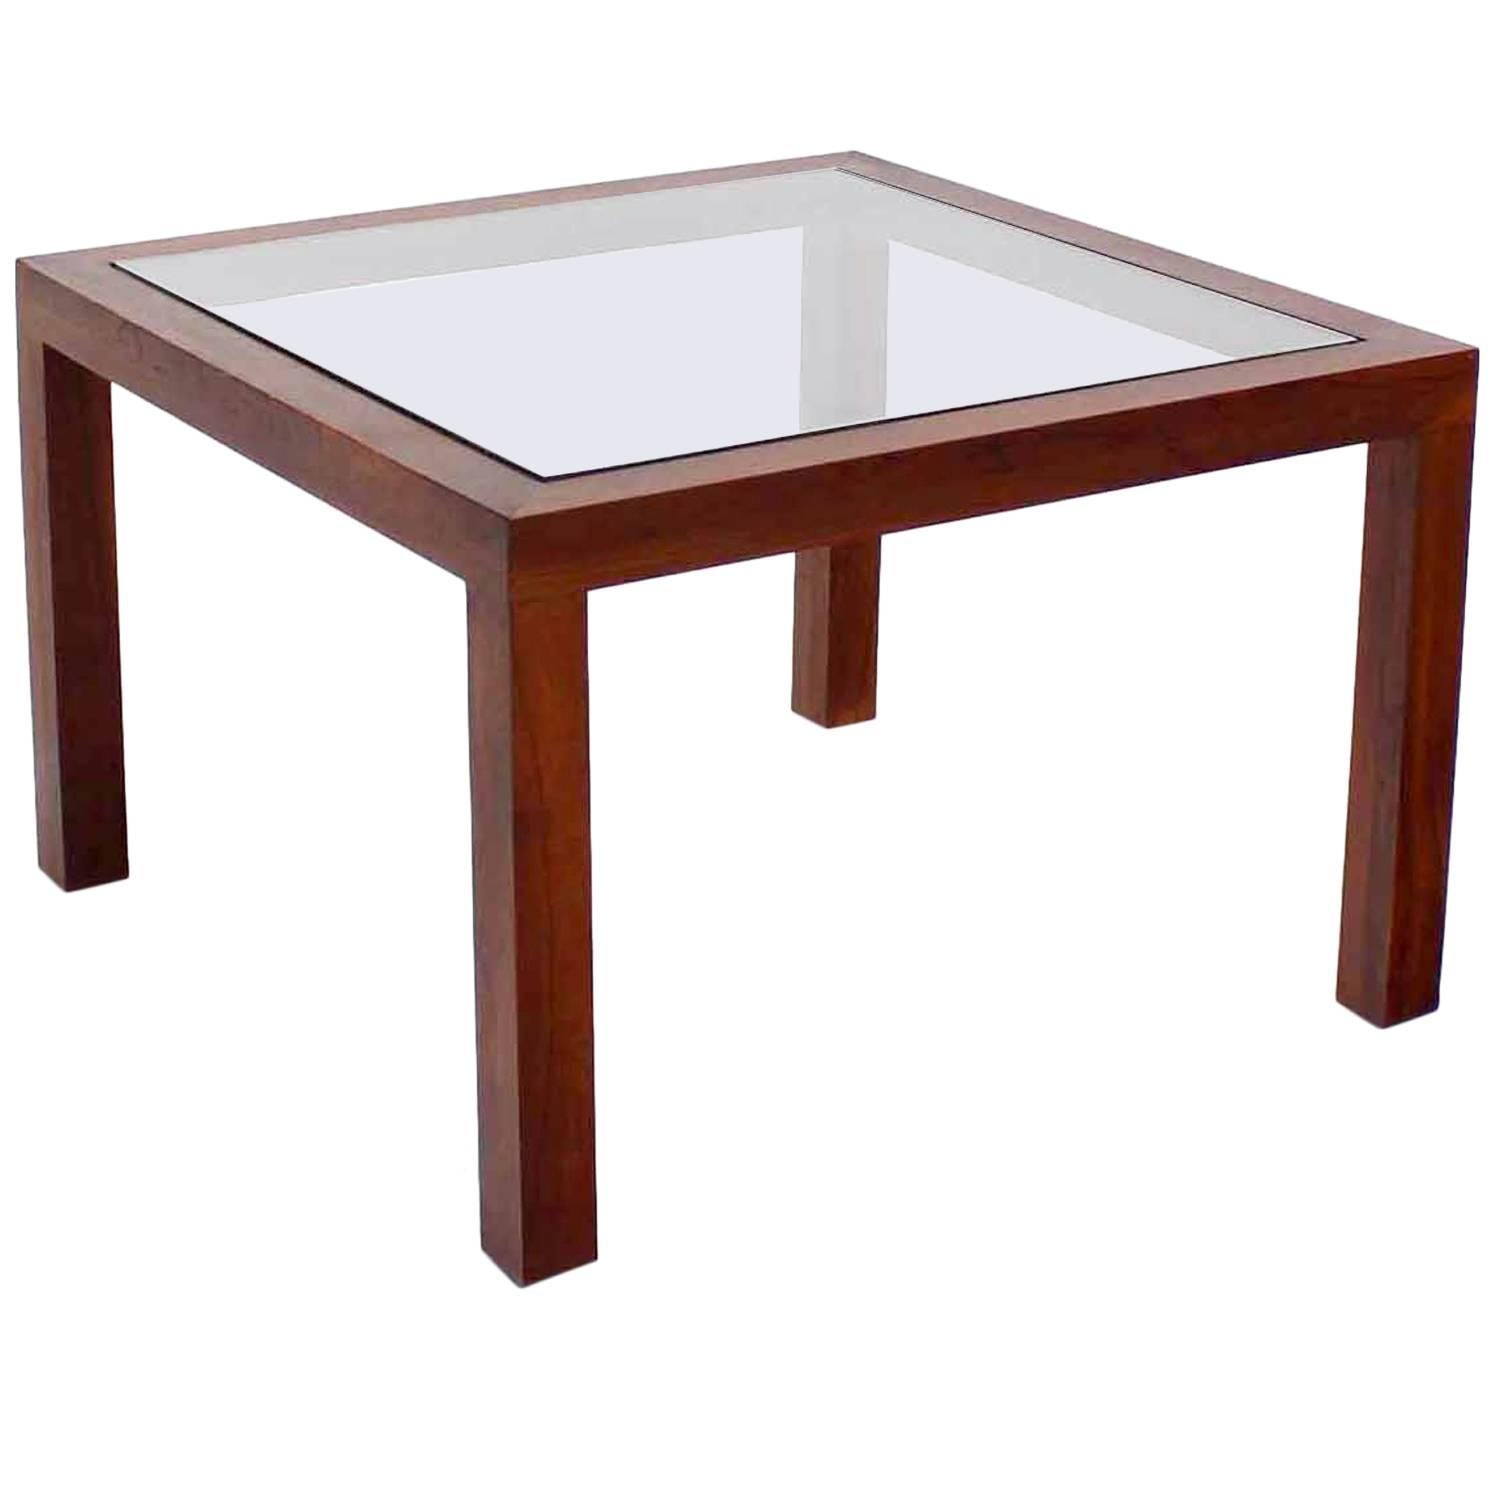 Table d'appoint carrée en noyer avec plateau en verre